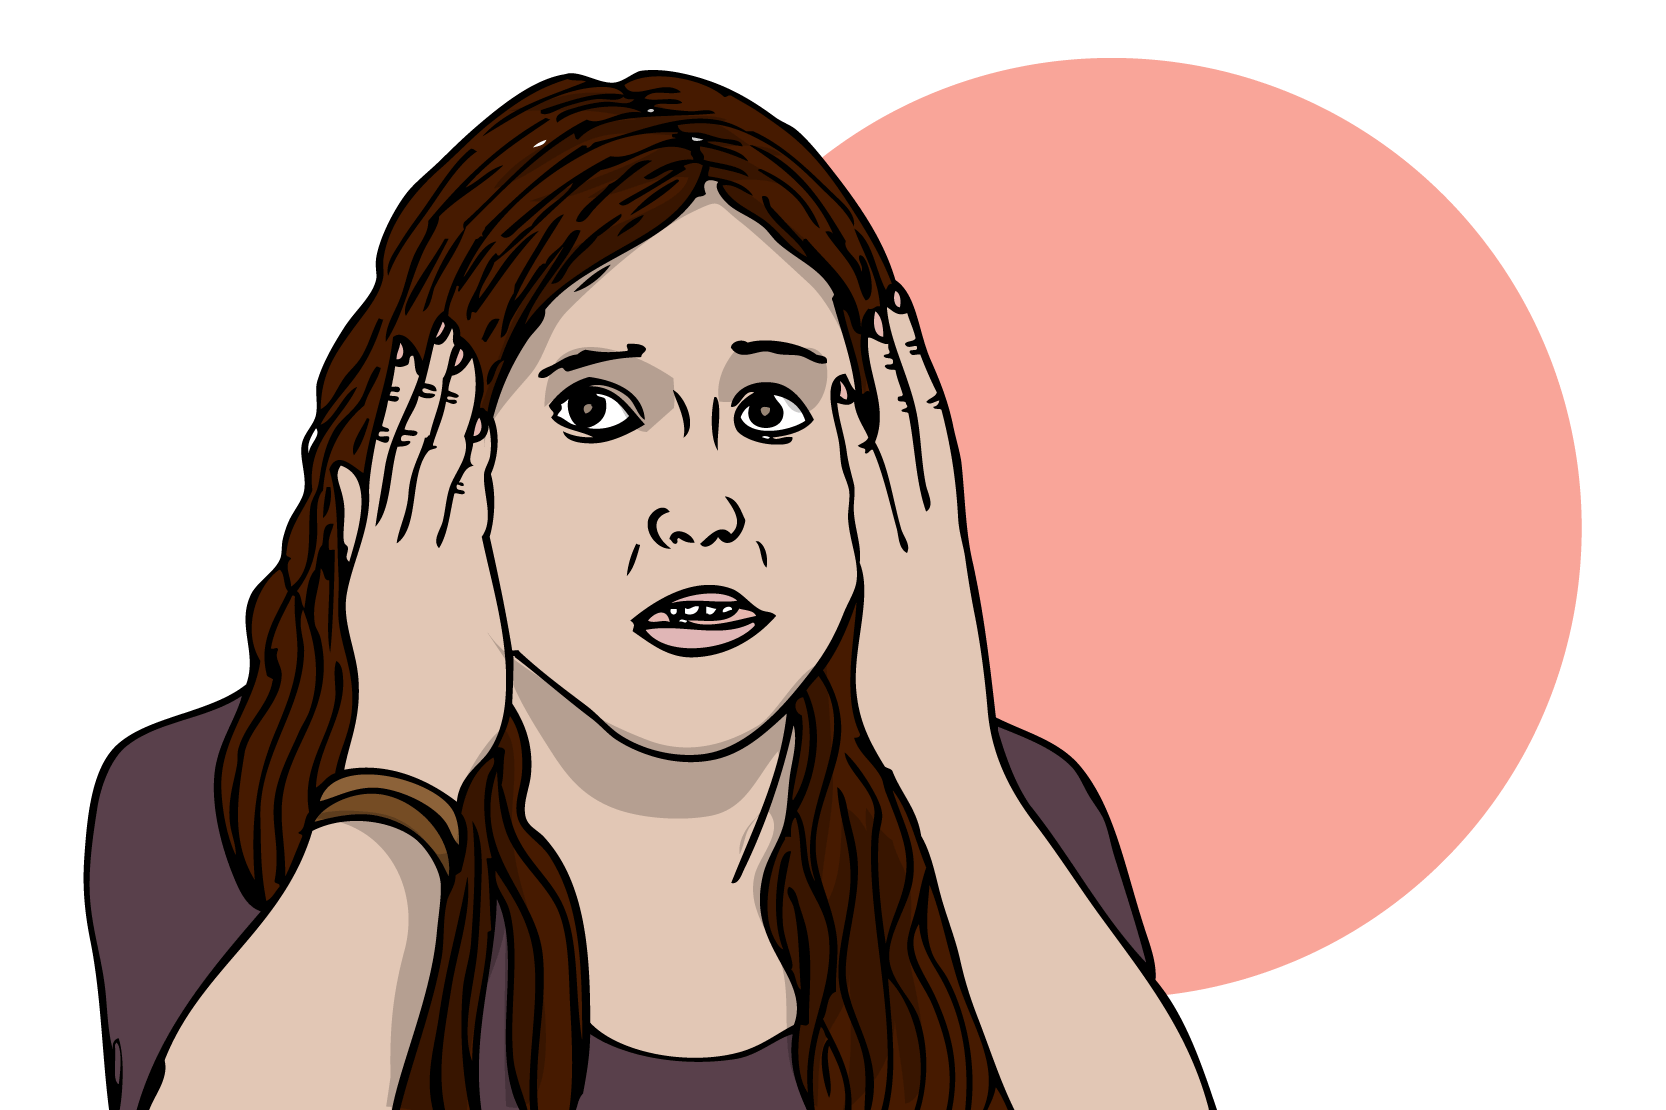 En person som håller händerna mot huvudet och ser rädd ut. Illustration.